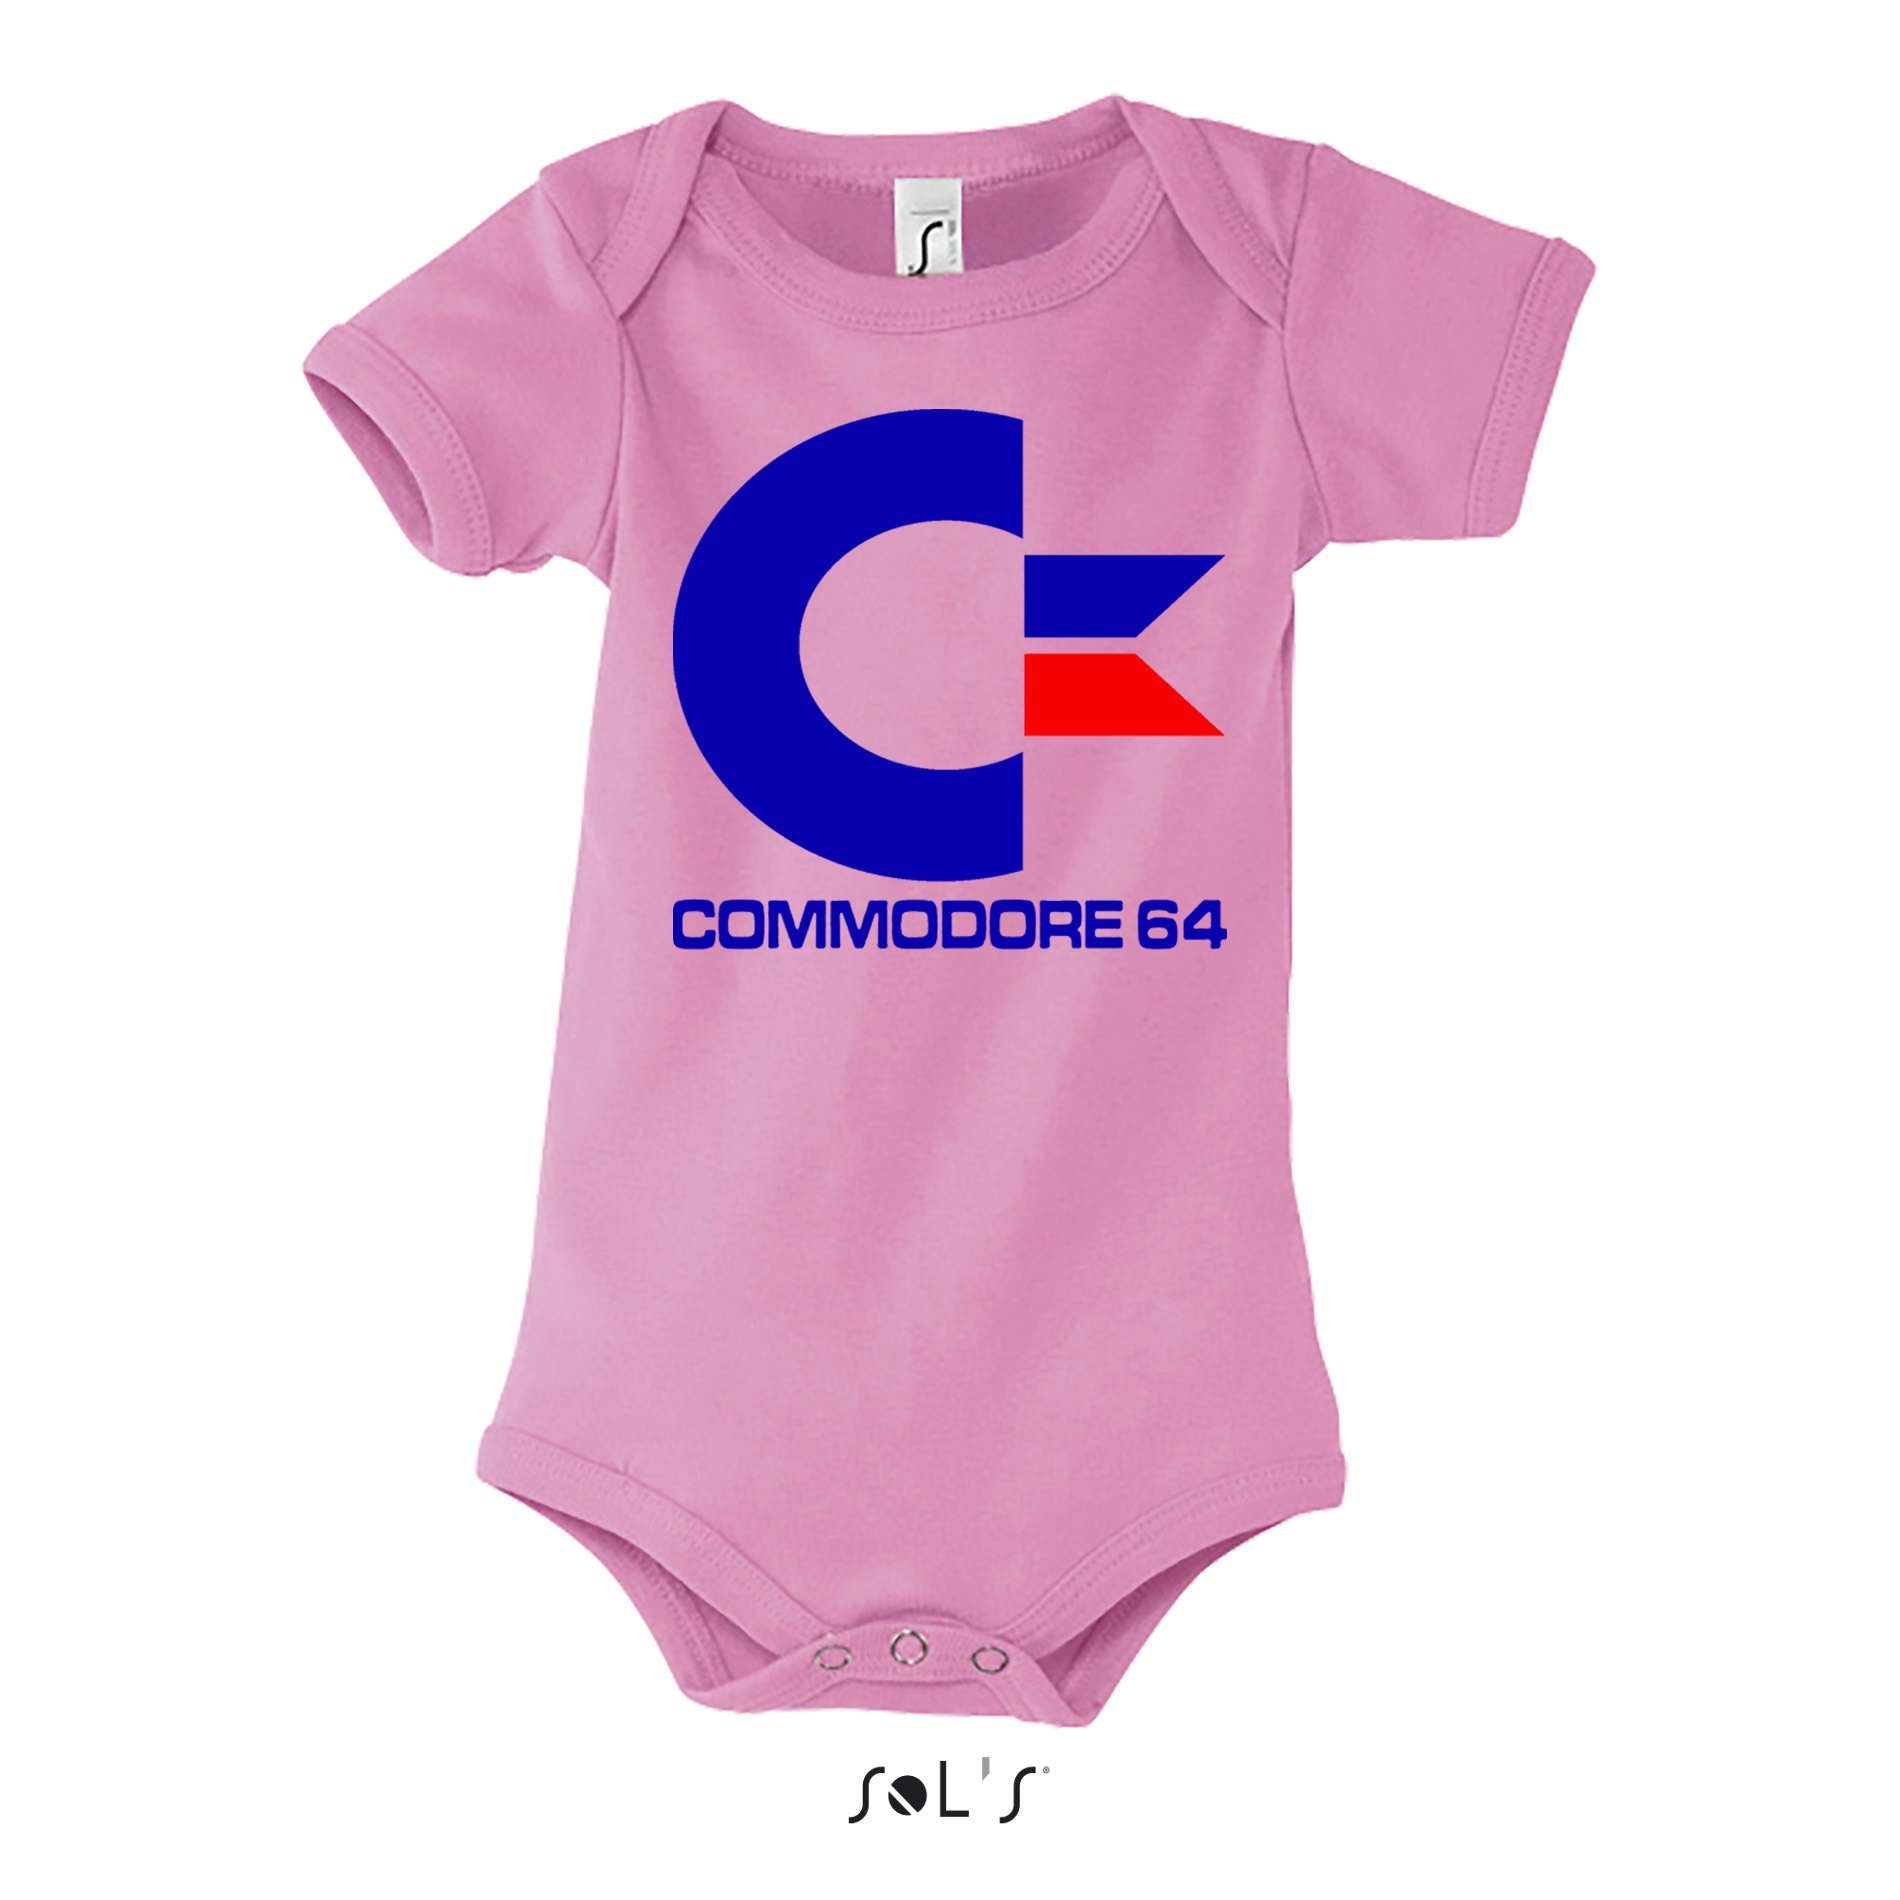 Konsole Nintendo Kinder Strampler & Commodore Brownie Rosa Blondie 64 Baby Amige